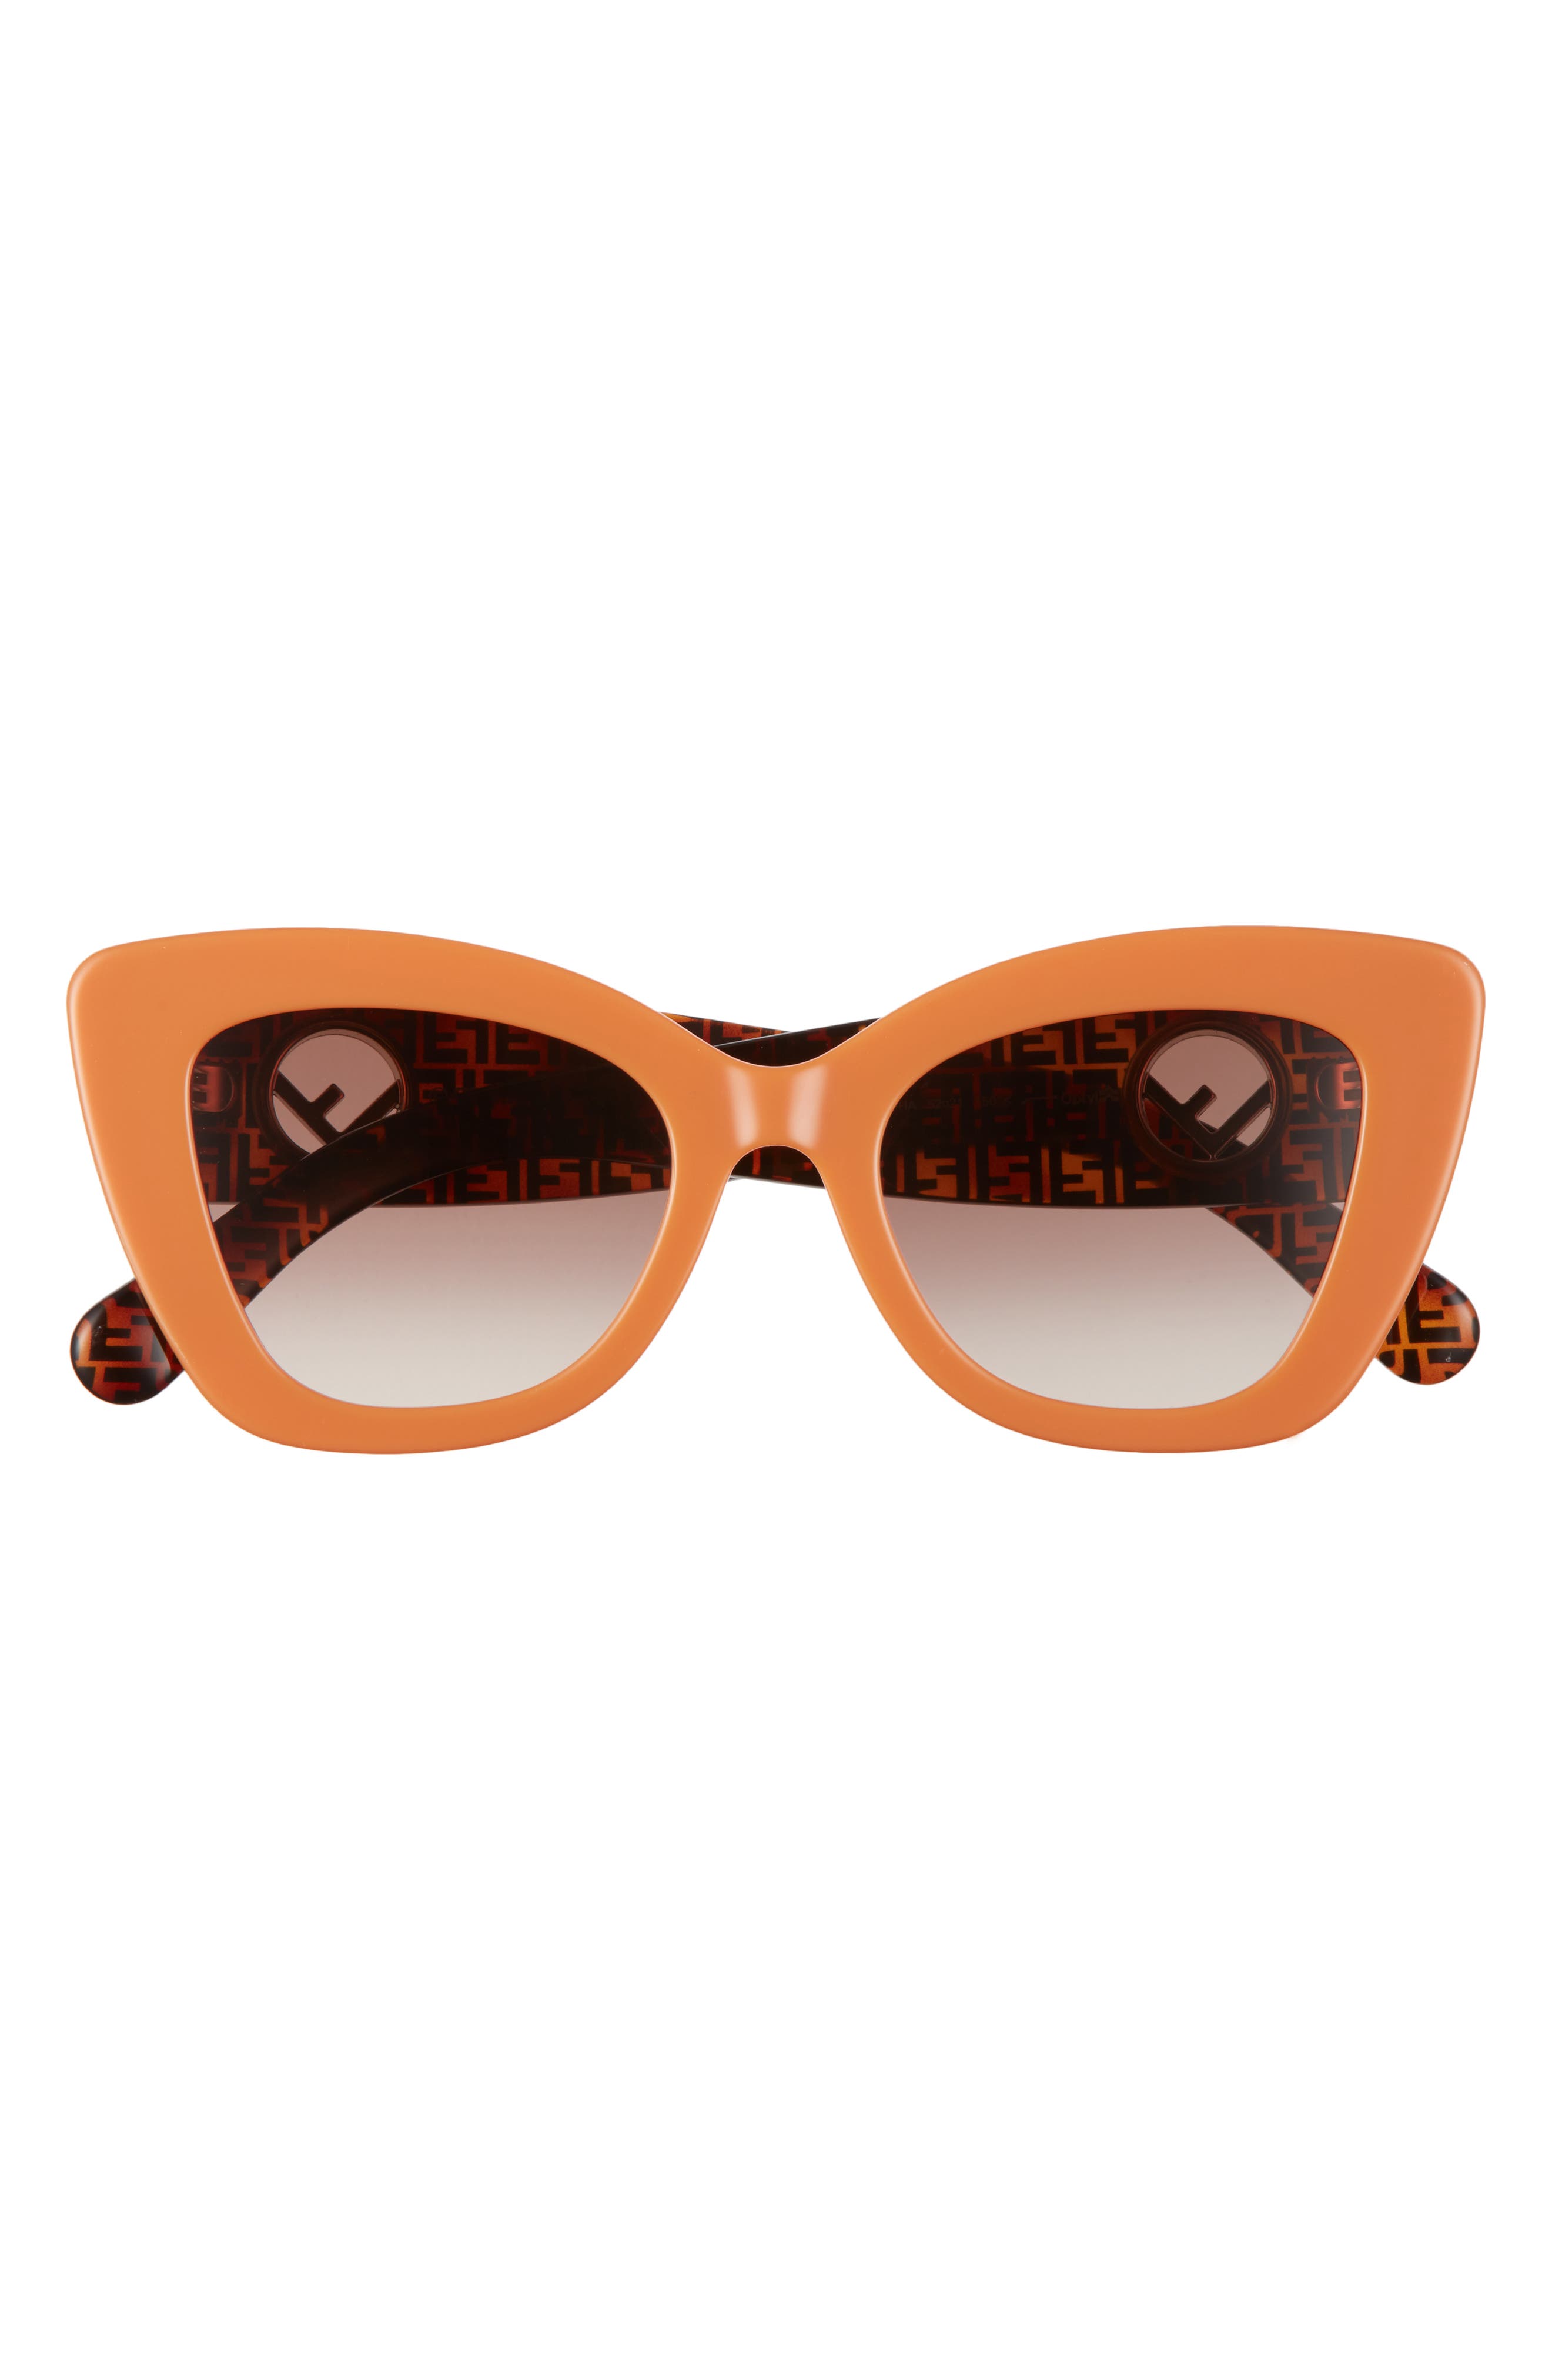 fendi orange sunglasses